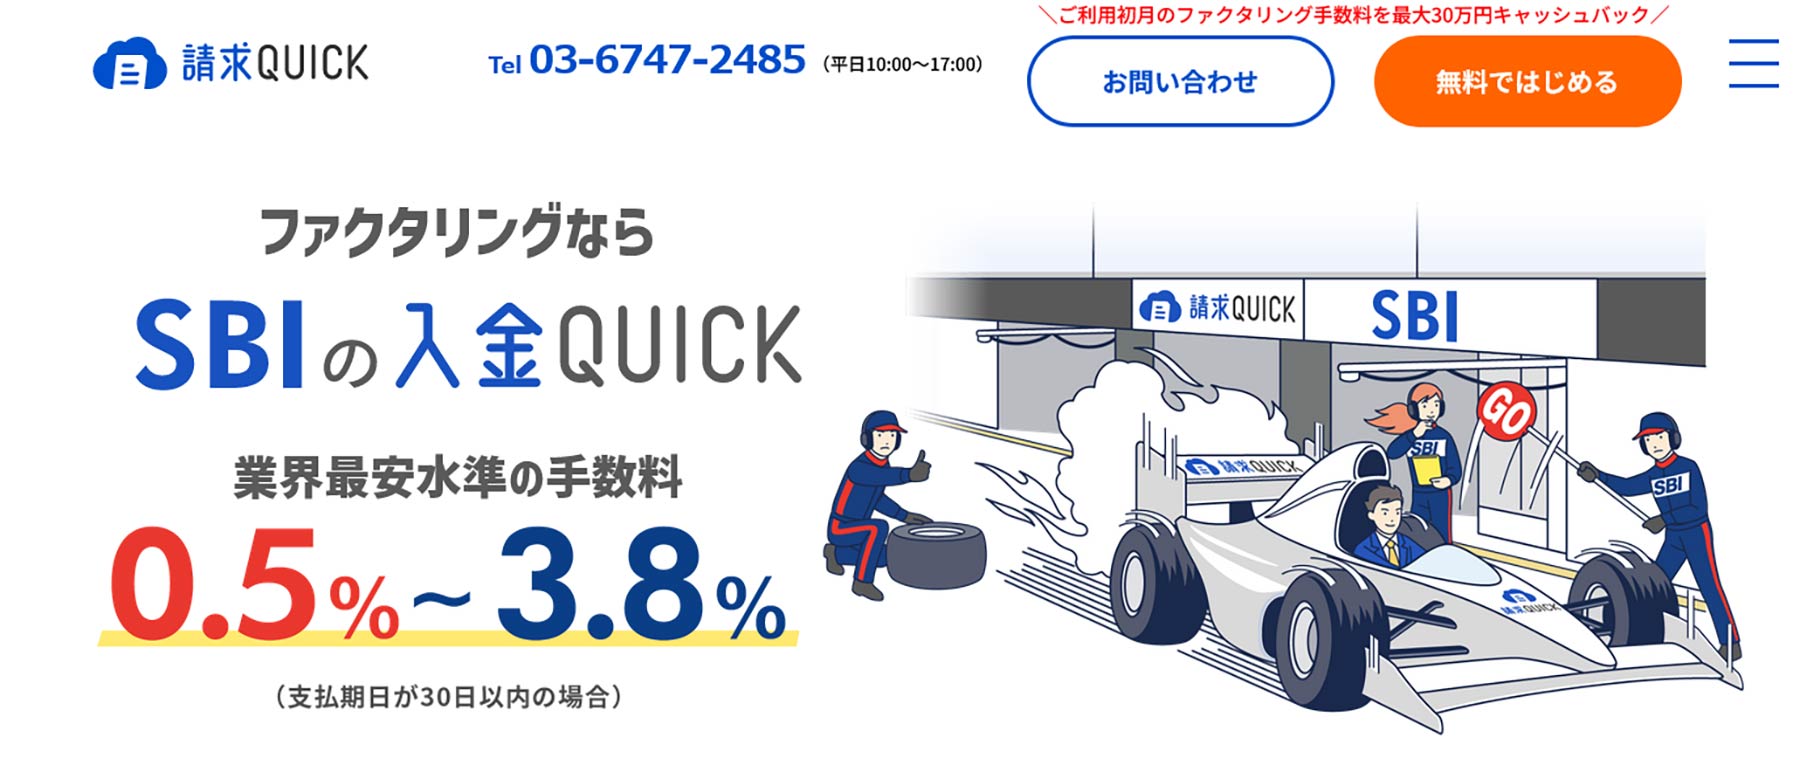 入金QUICK_公式Webサイト